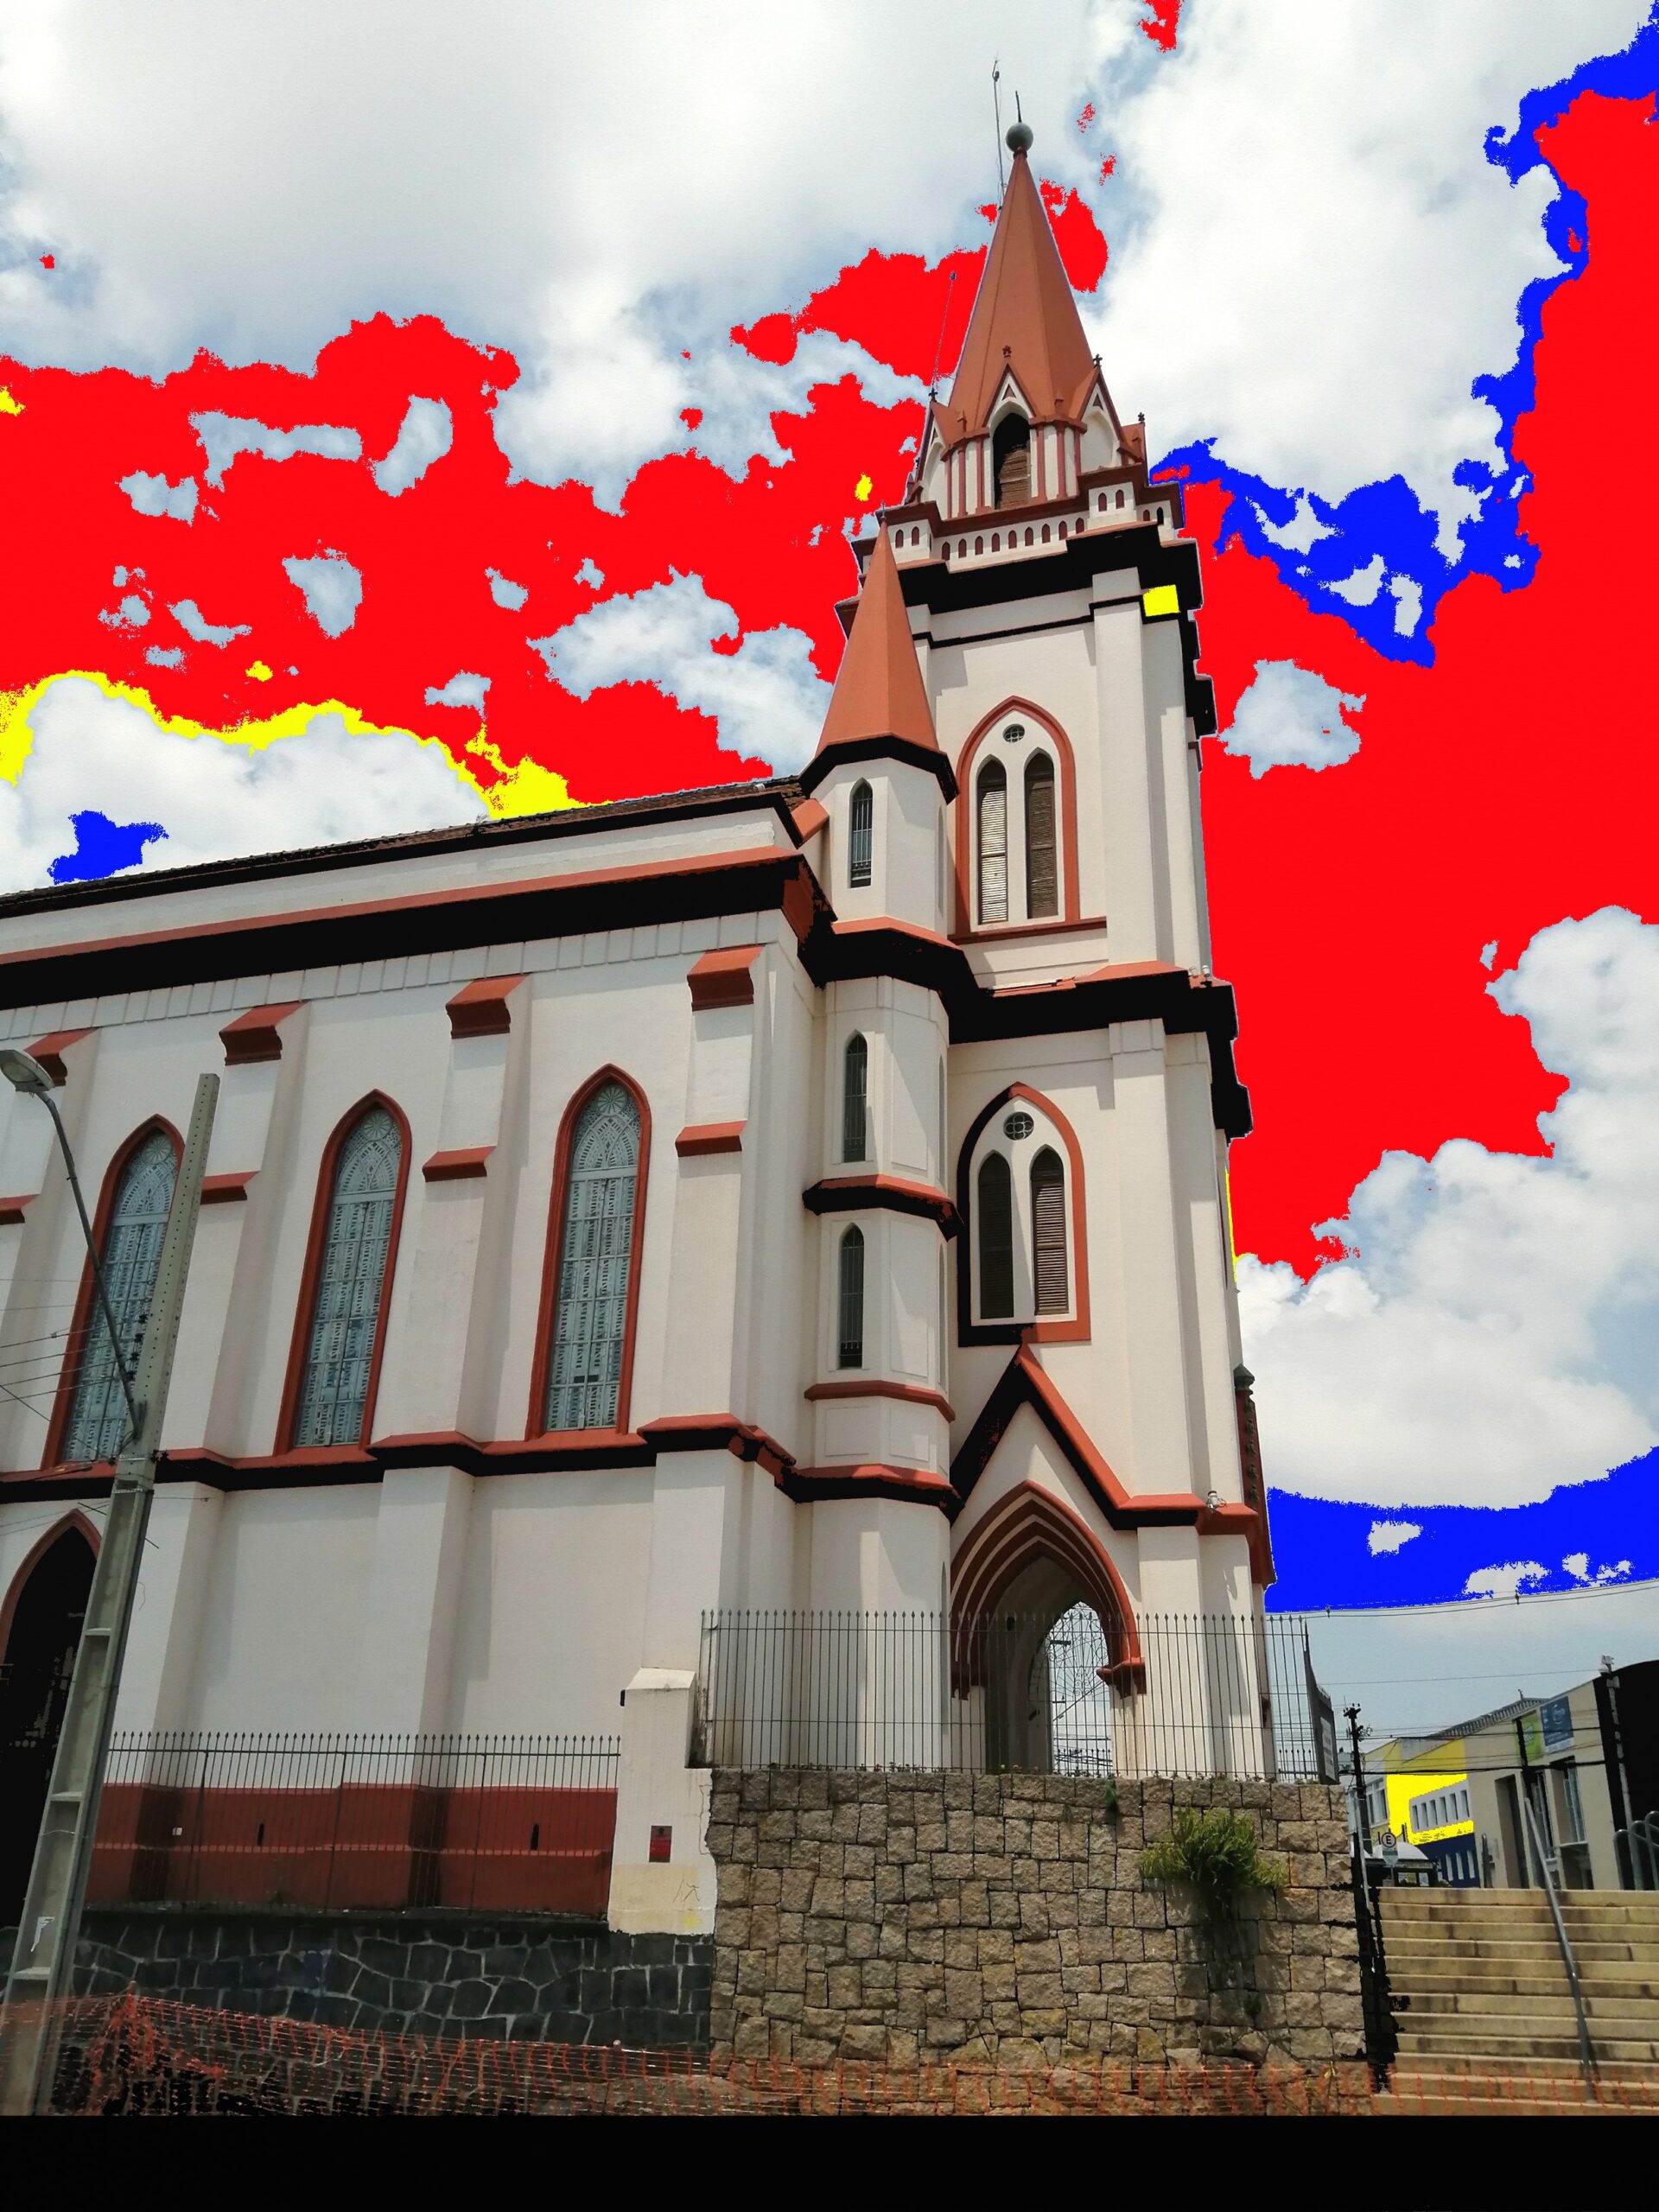 Igreja do Senhor Bom Jesus Portao colored with red, blue, and yellow